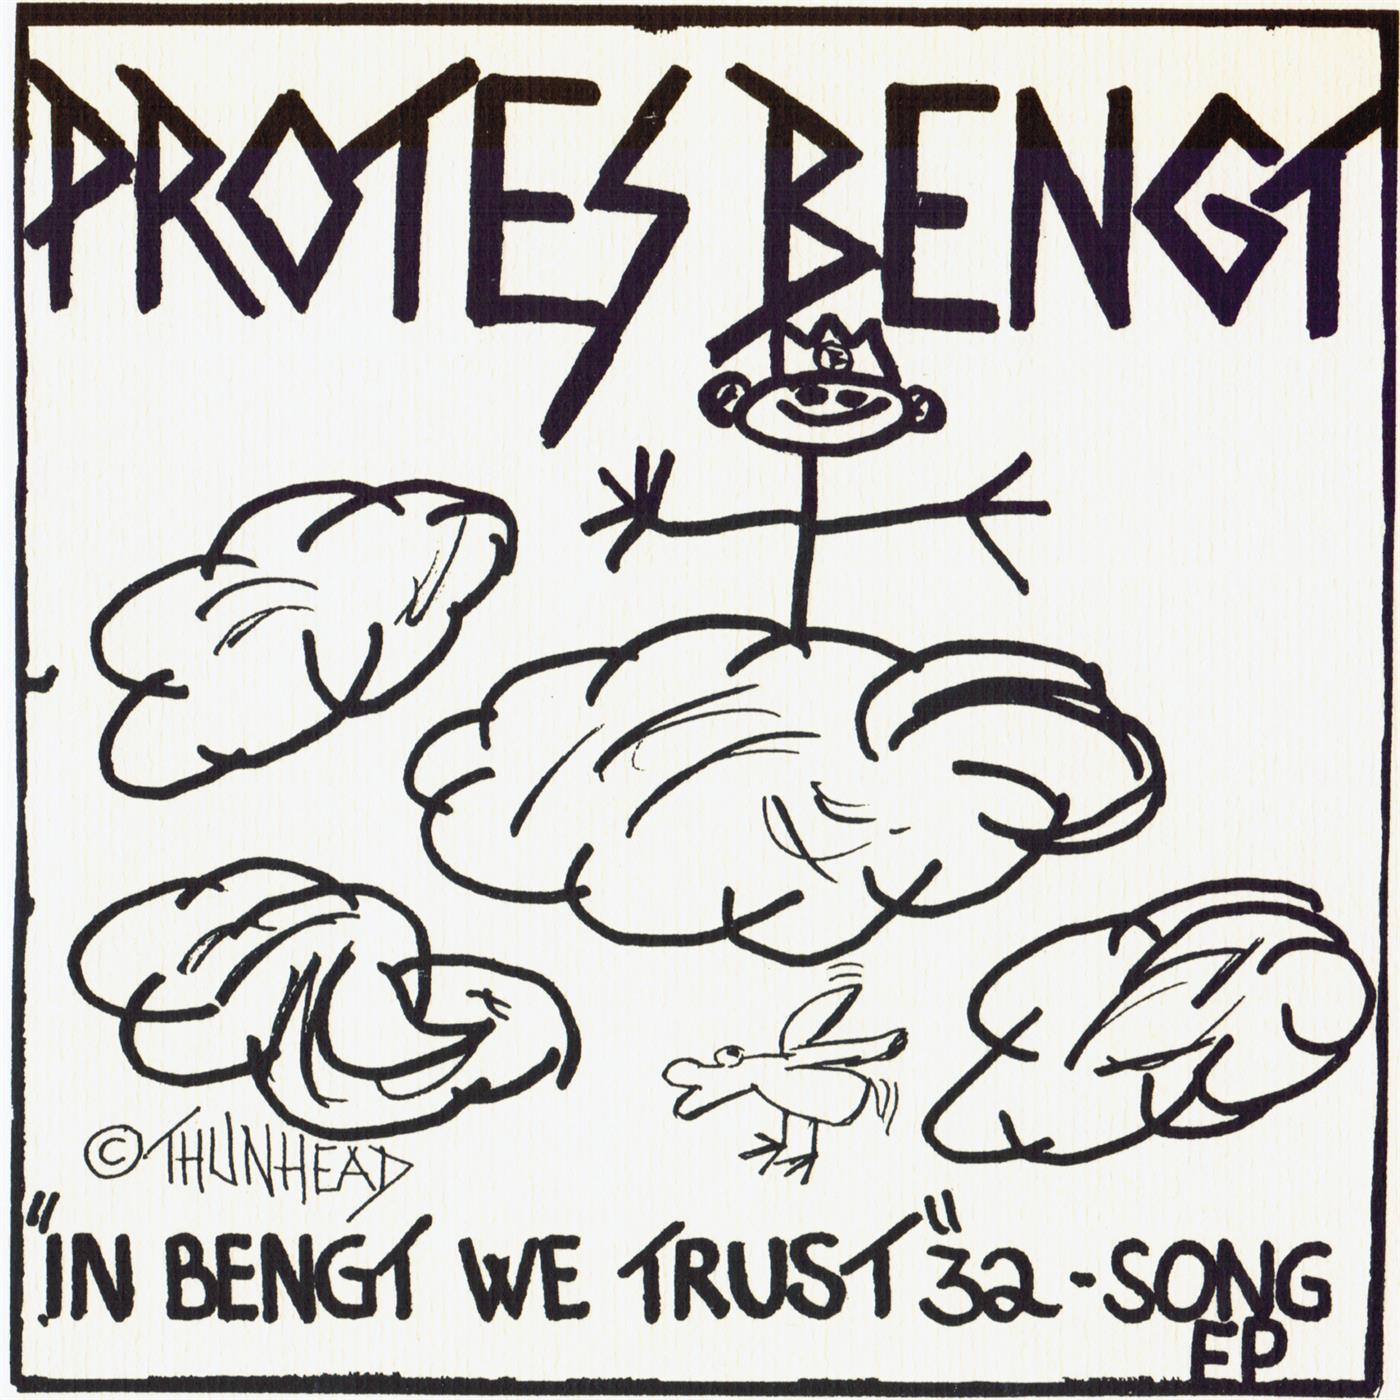 In Bengt We Trust 32-song EP